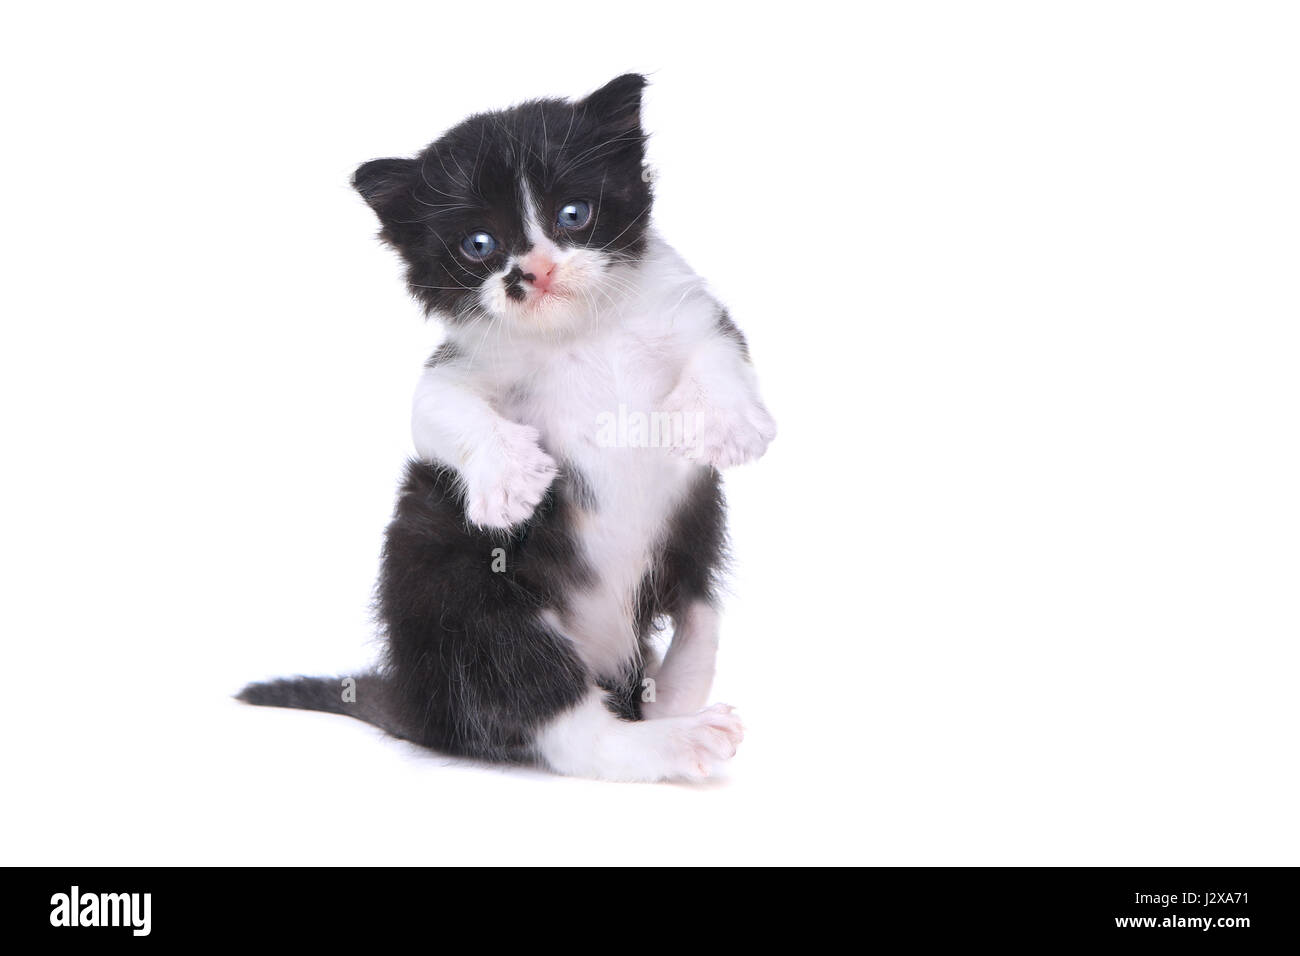 Adorable Baby Tuxedo Style Kitten On White Background Stock Photo - Alamy